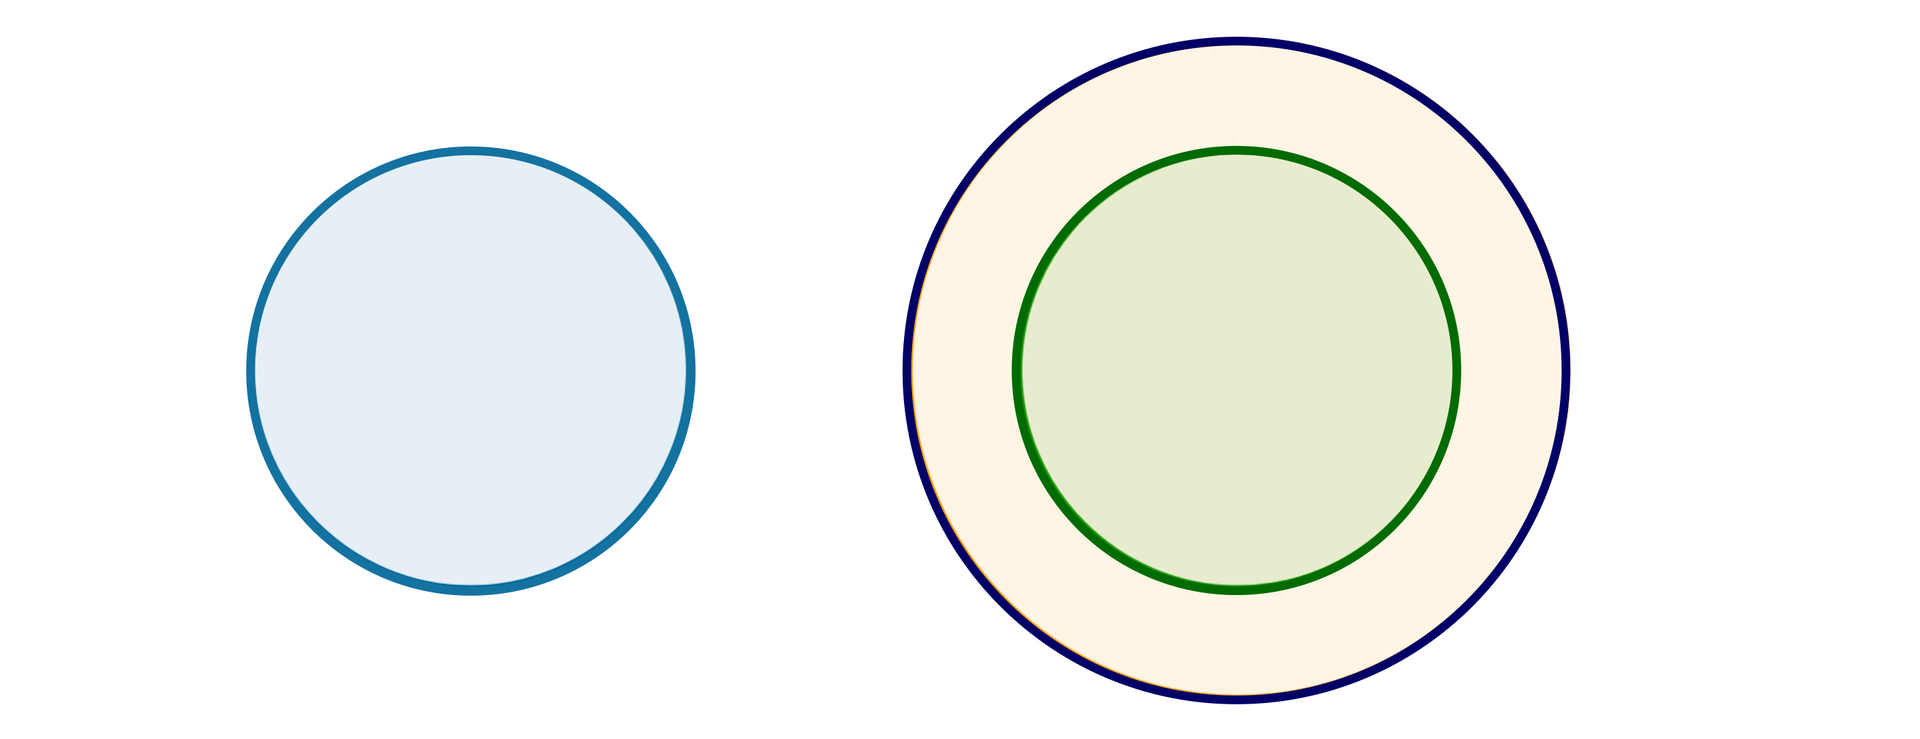 Po lewej stronie ilustracji widzimy niebieskie koło, a po prawej stronie dwa koła współśrodkowe, mniejsze zielone i większe pomarańczowe.